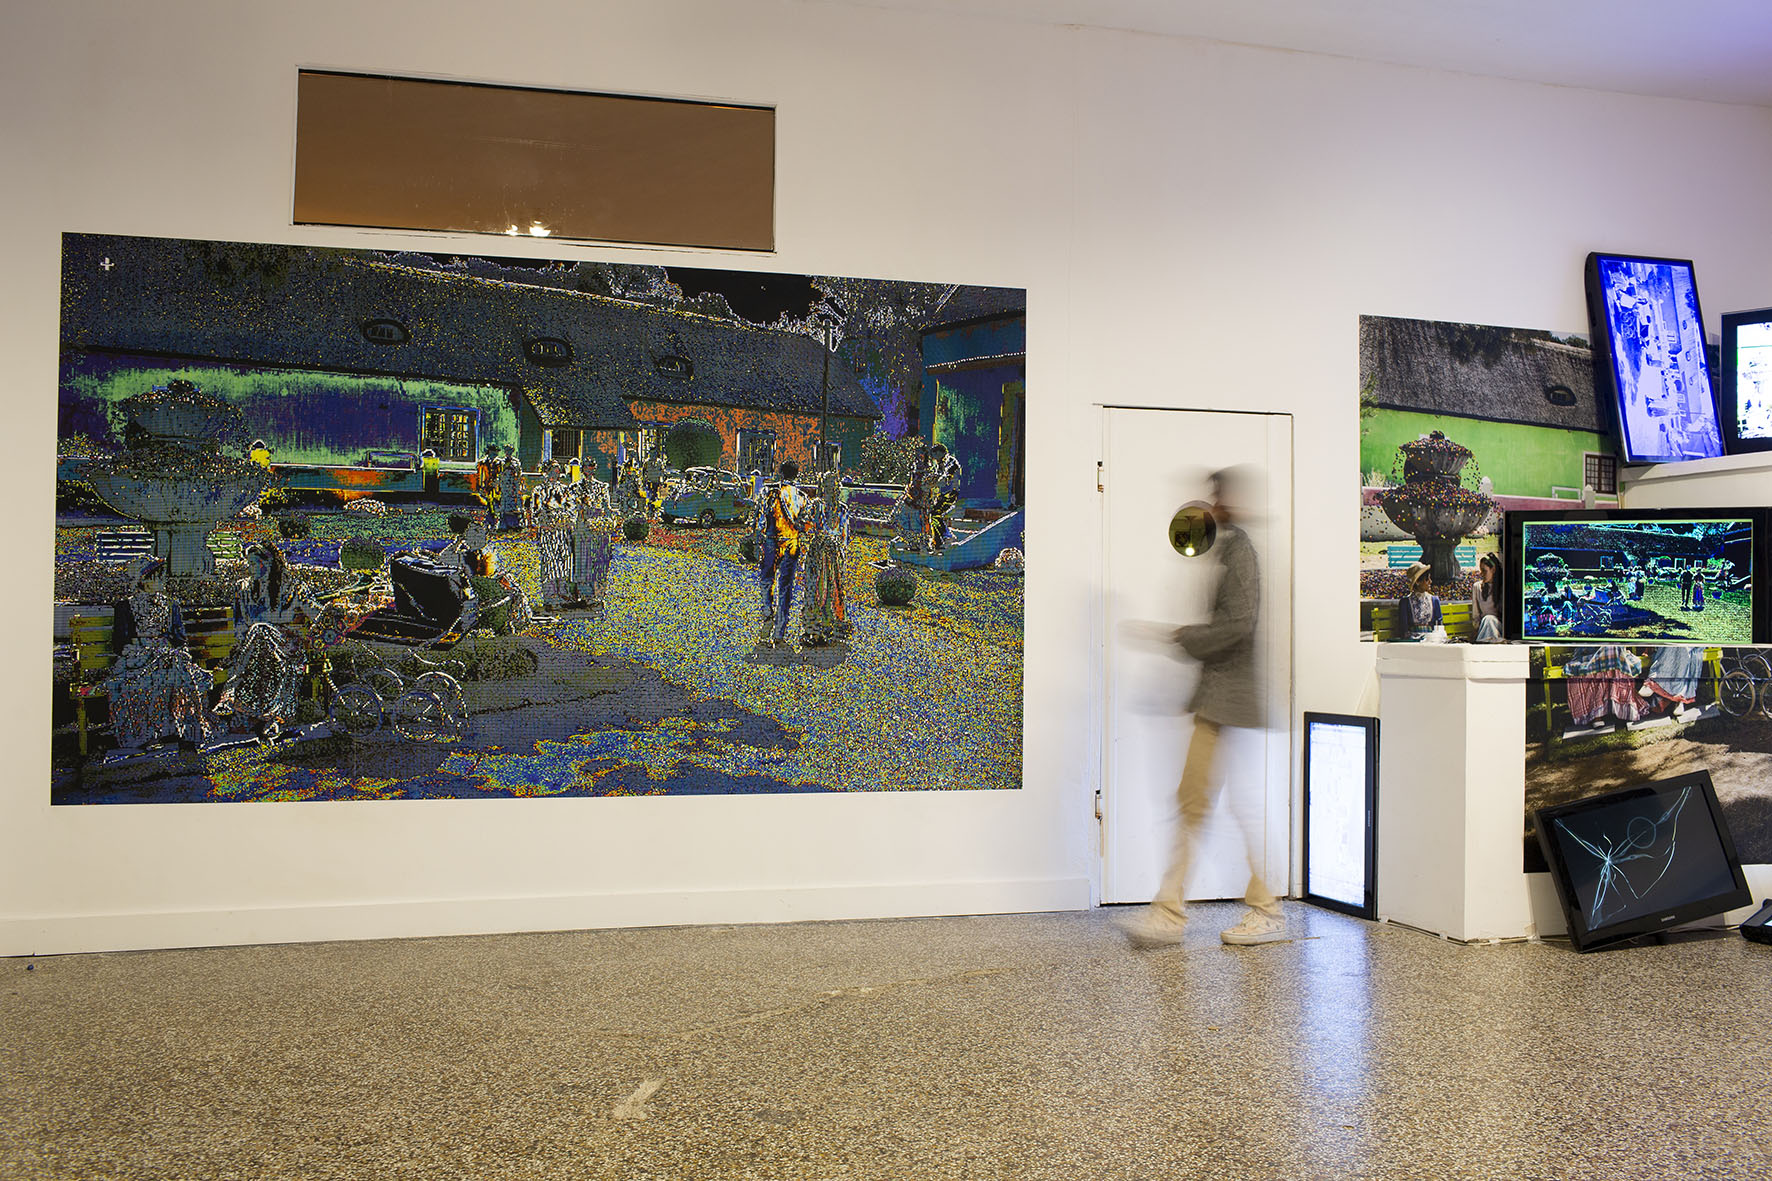 Vue d'exposition dans une galerie : un grand tirage papier peint de dimension 2x3 mètres est présenté à côté d'une installation en volume composée d'écrans défecteux.